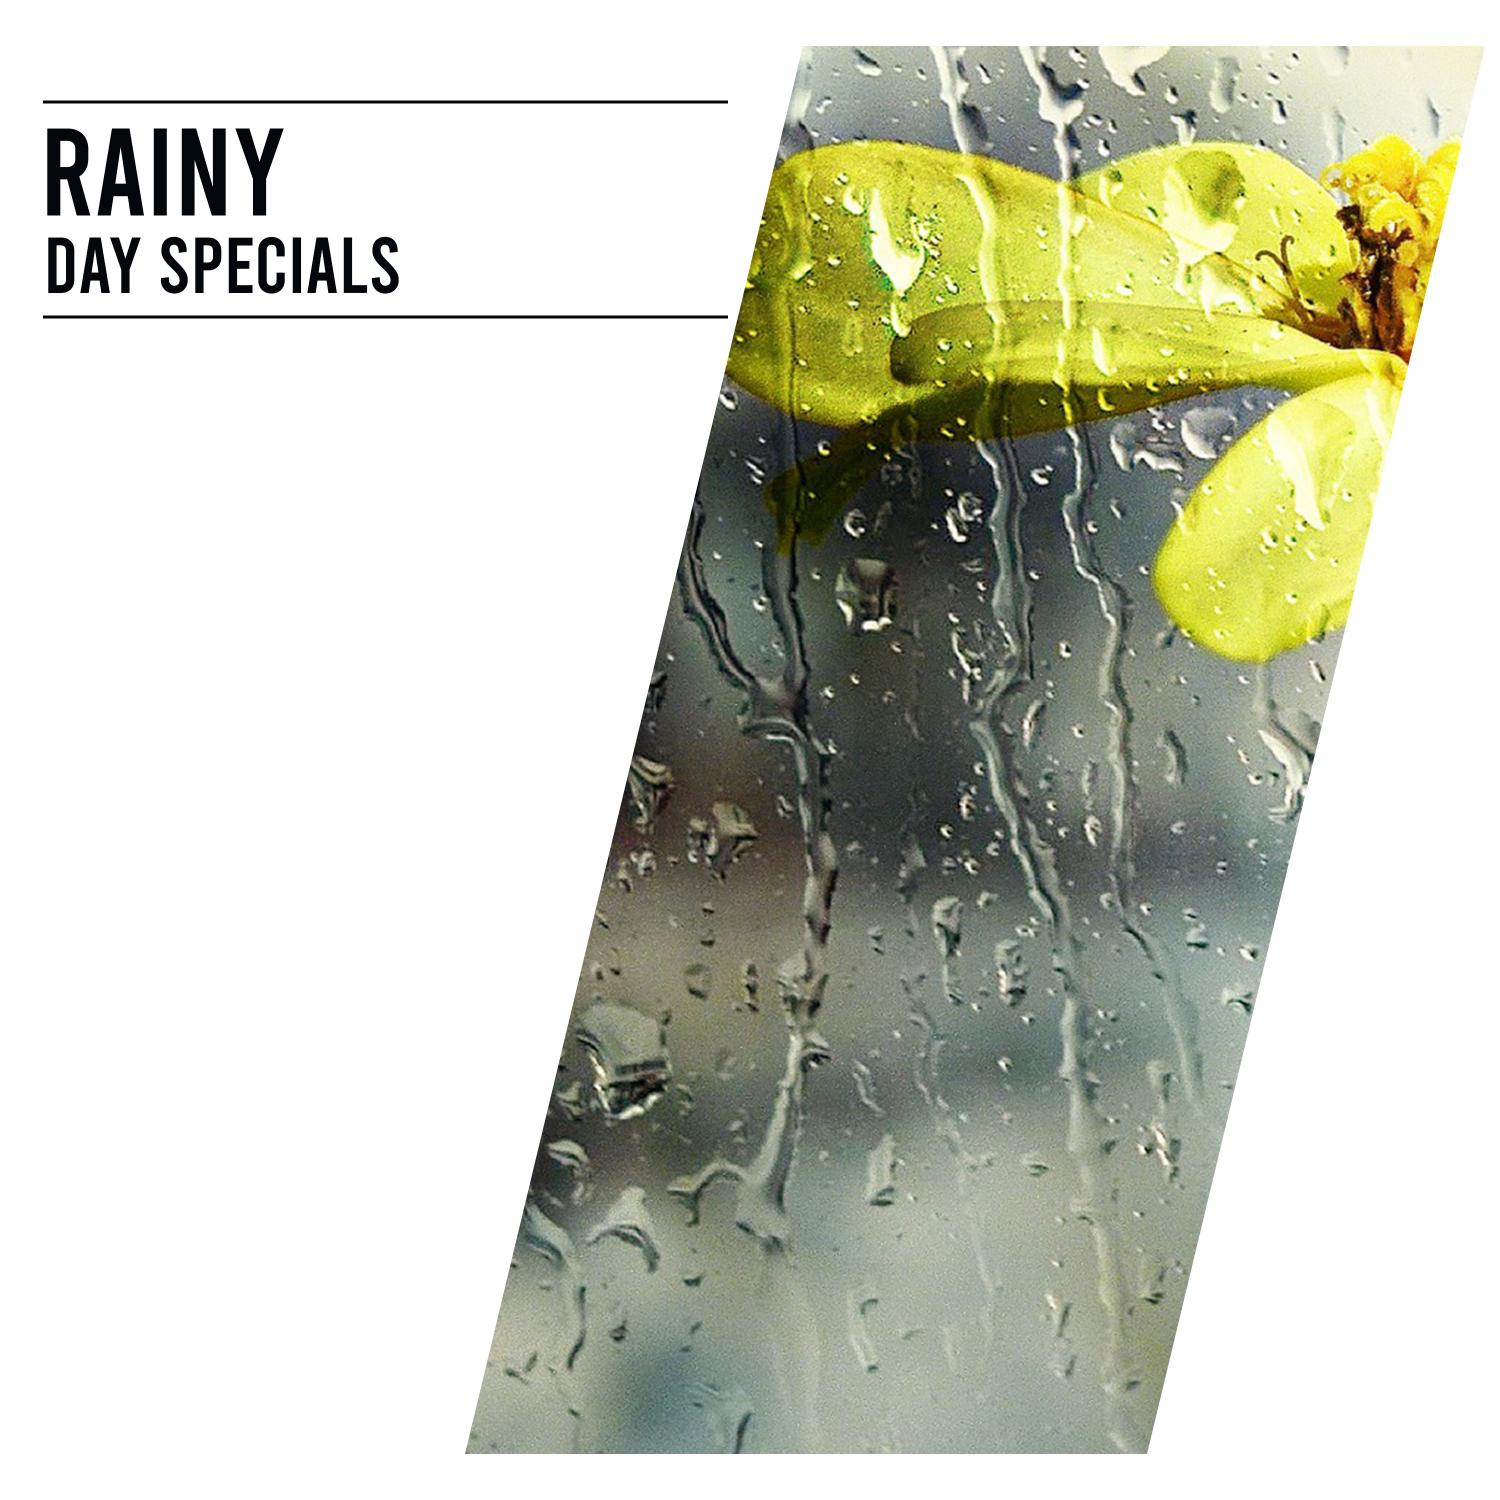 18 Rainy Day Specials